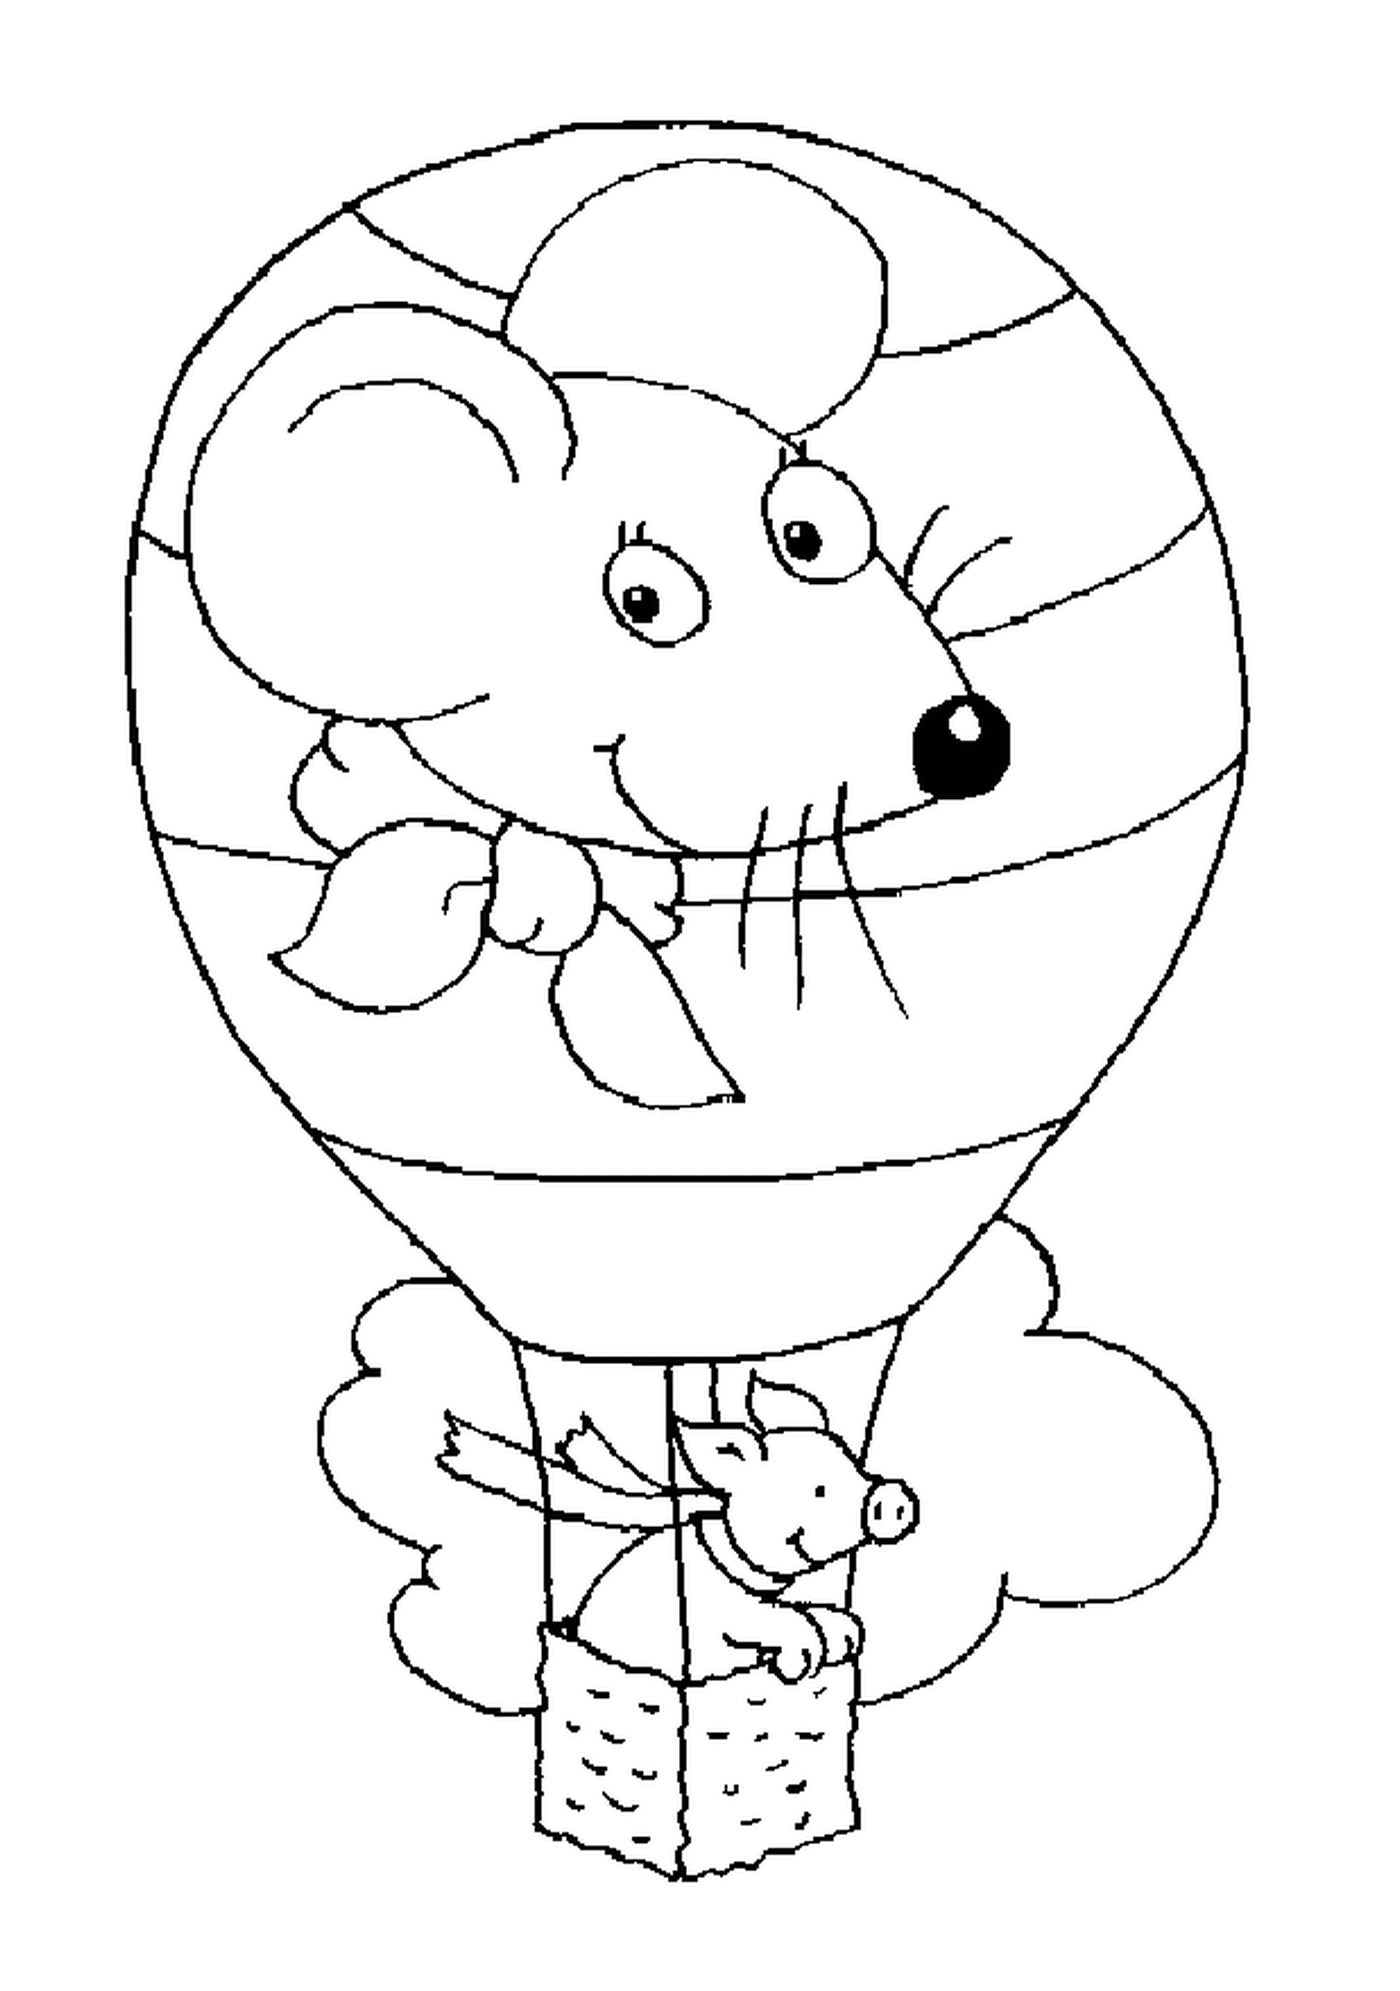  Un maiale in una mongolfiera con la testa di topo 